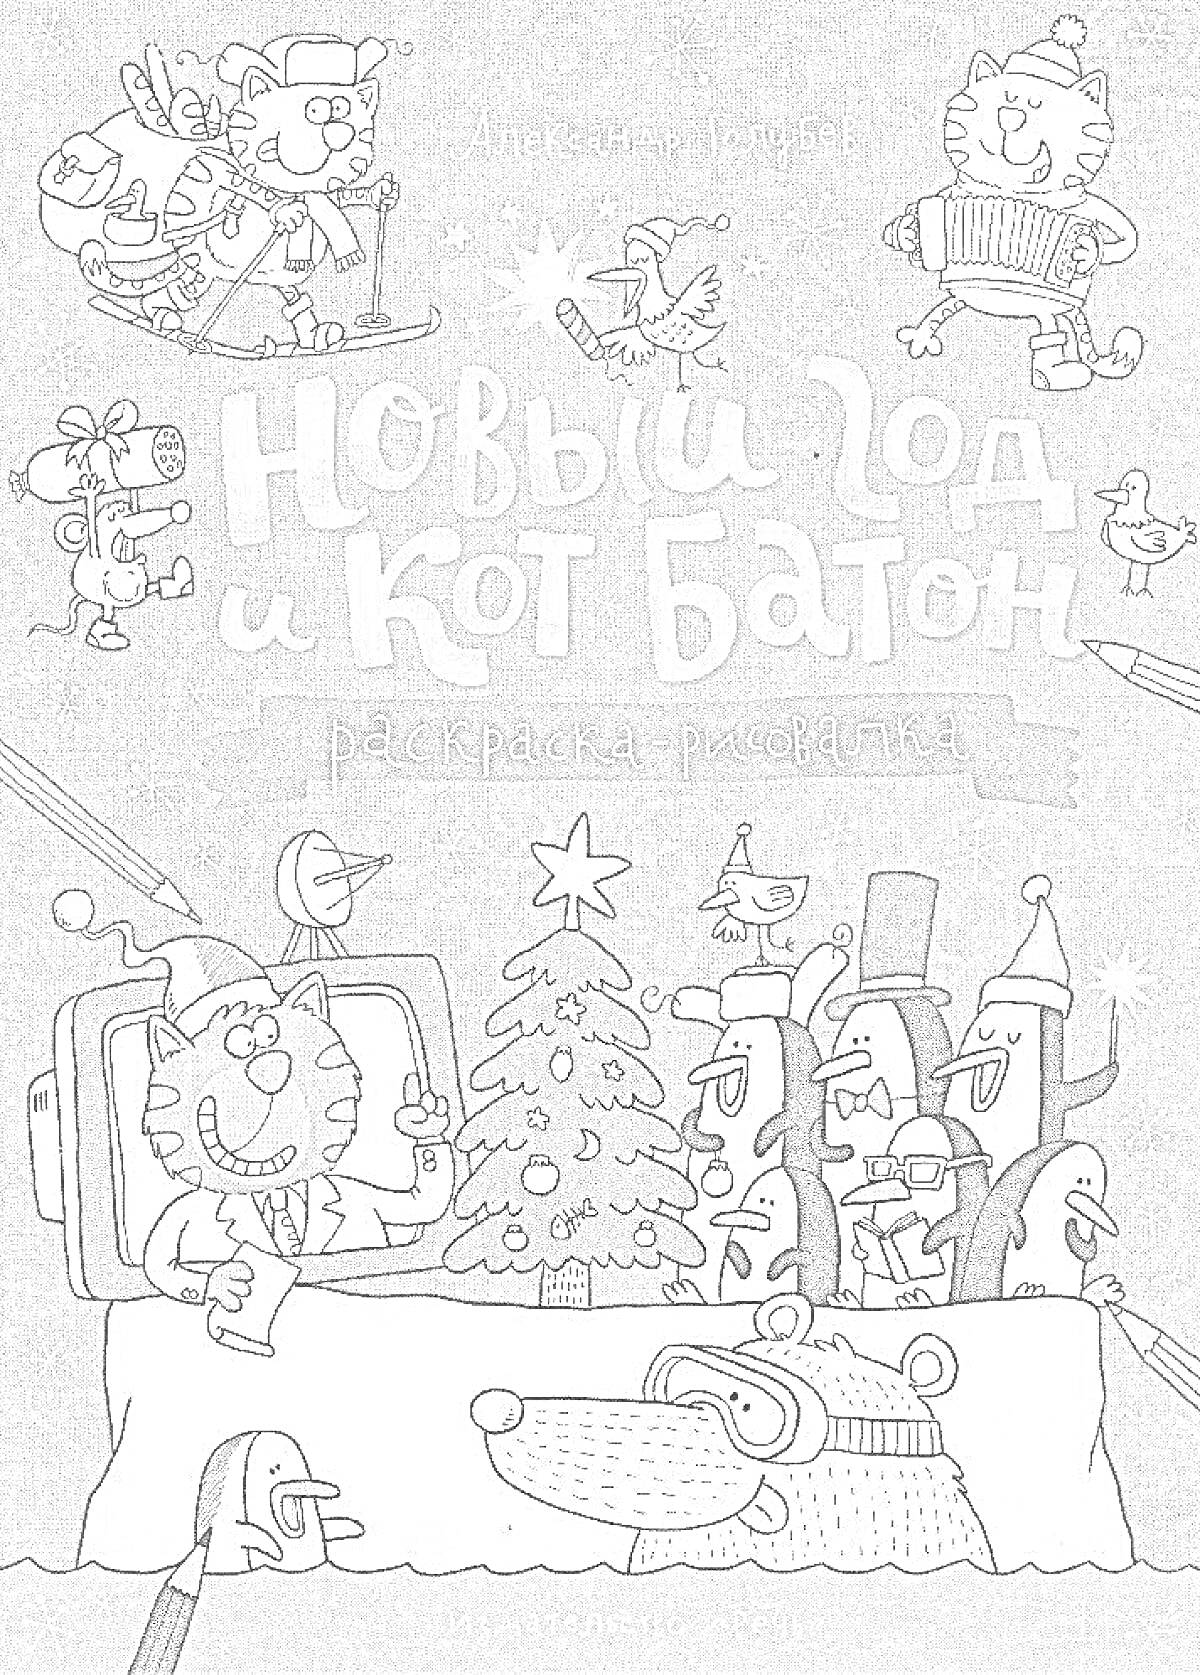 Раскраска Новый год и Кот Батон. Раскраска-рисовалка. На изображении: коты, новогодняя ёлка, костюм деда мороза, подарки, музыкальные инструменты, снегирь, персонажи вокруг стола.